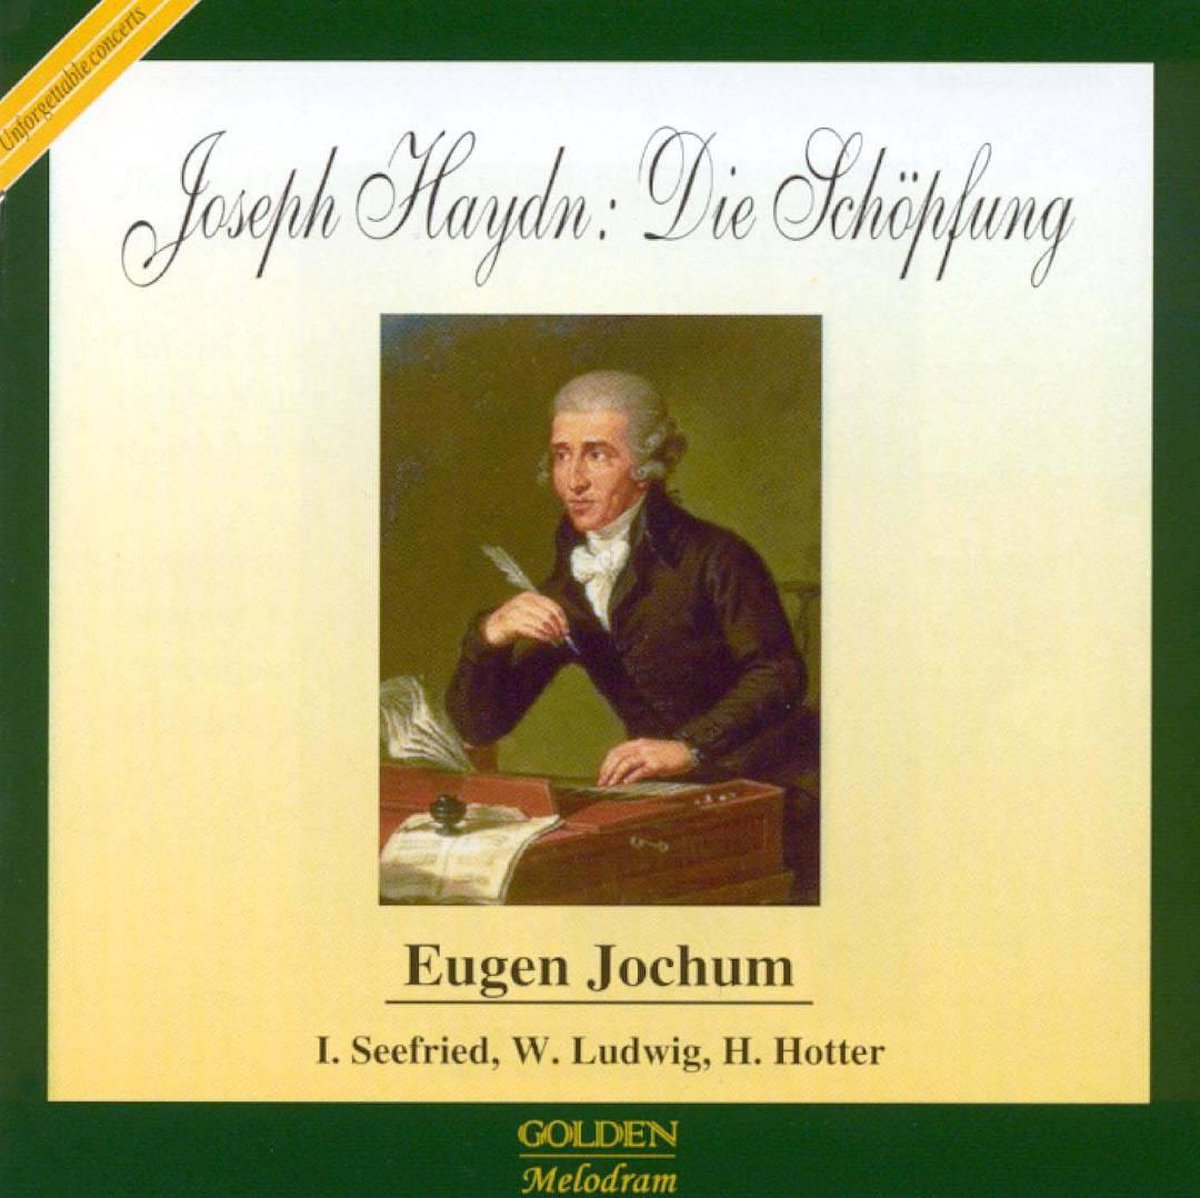 Haydn: Die Schöpfung - Eugen Jochum